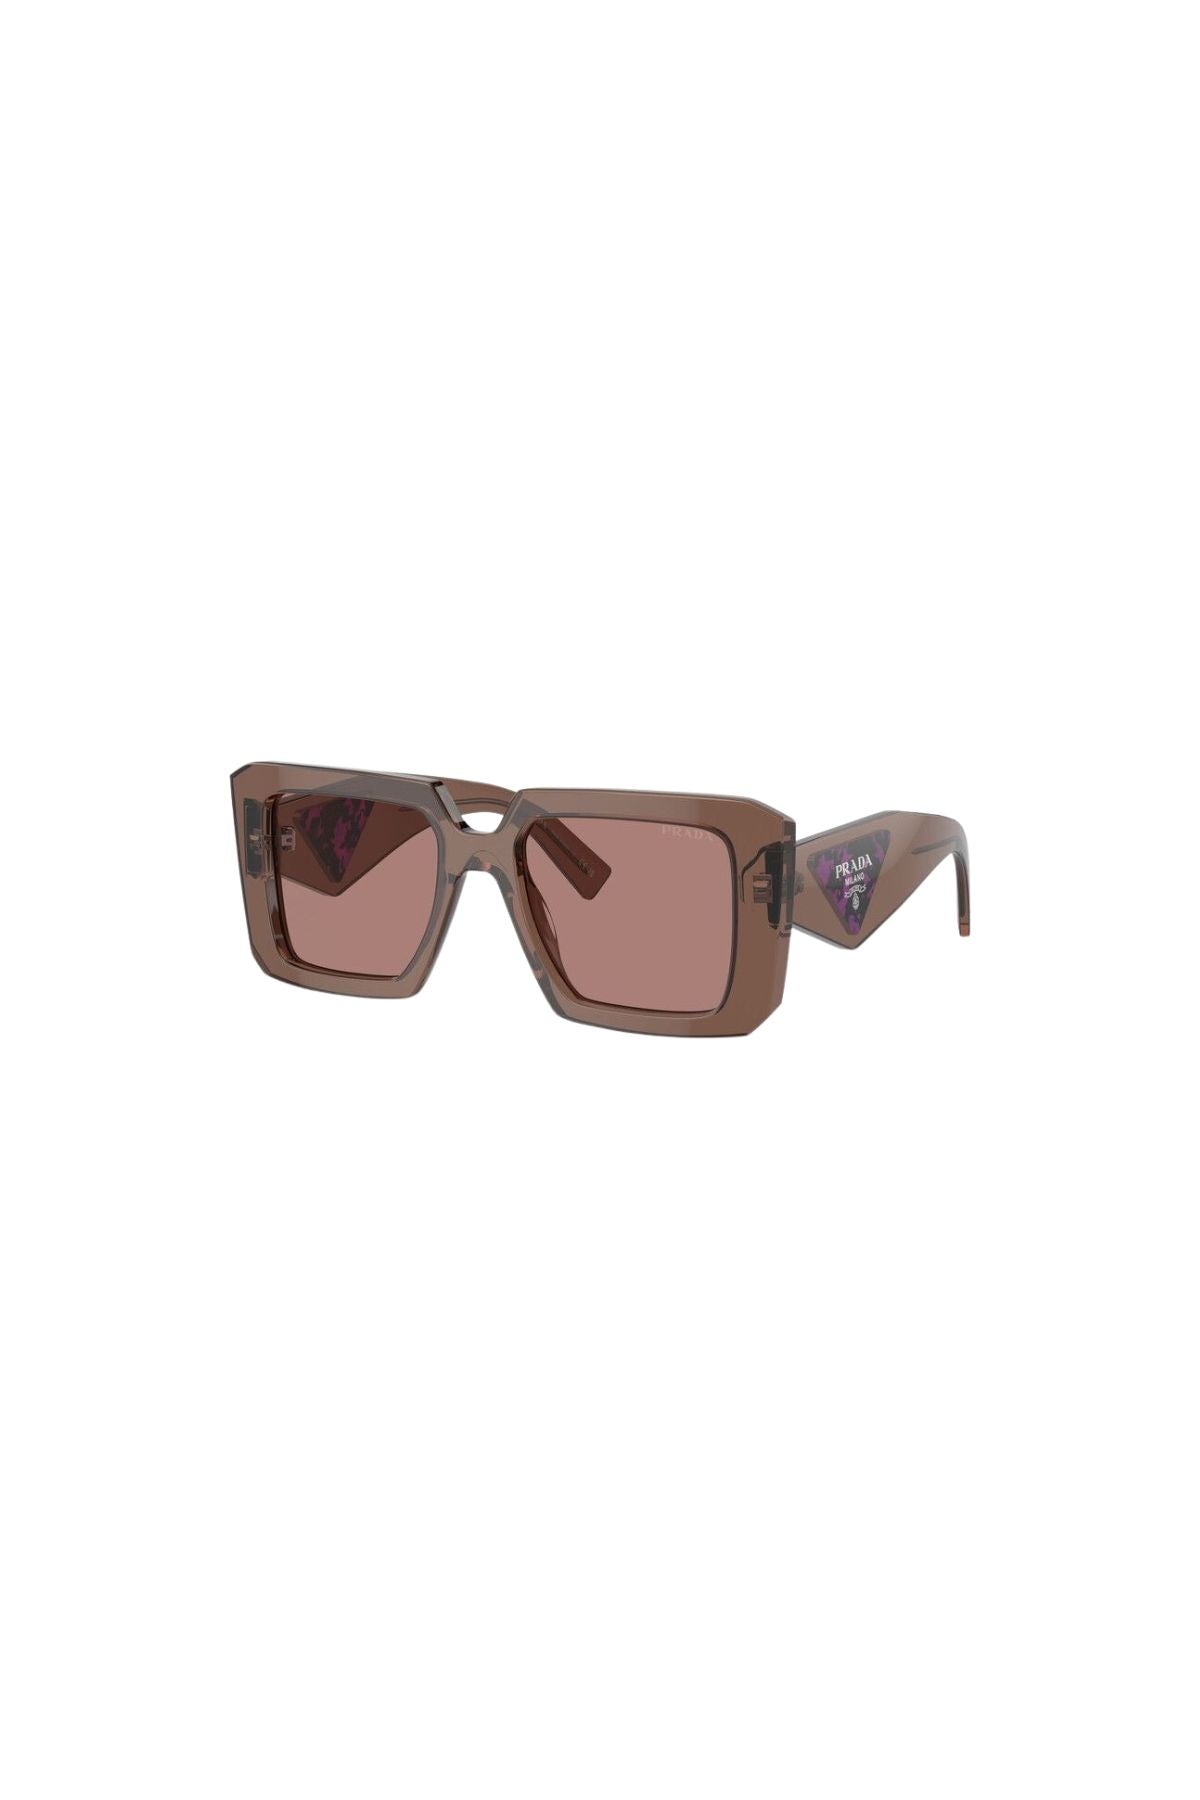 Prada Square Framed Sunglasses - Transparent Brown